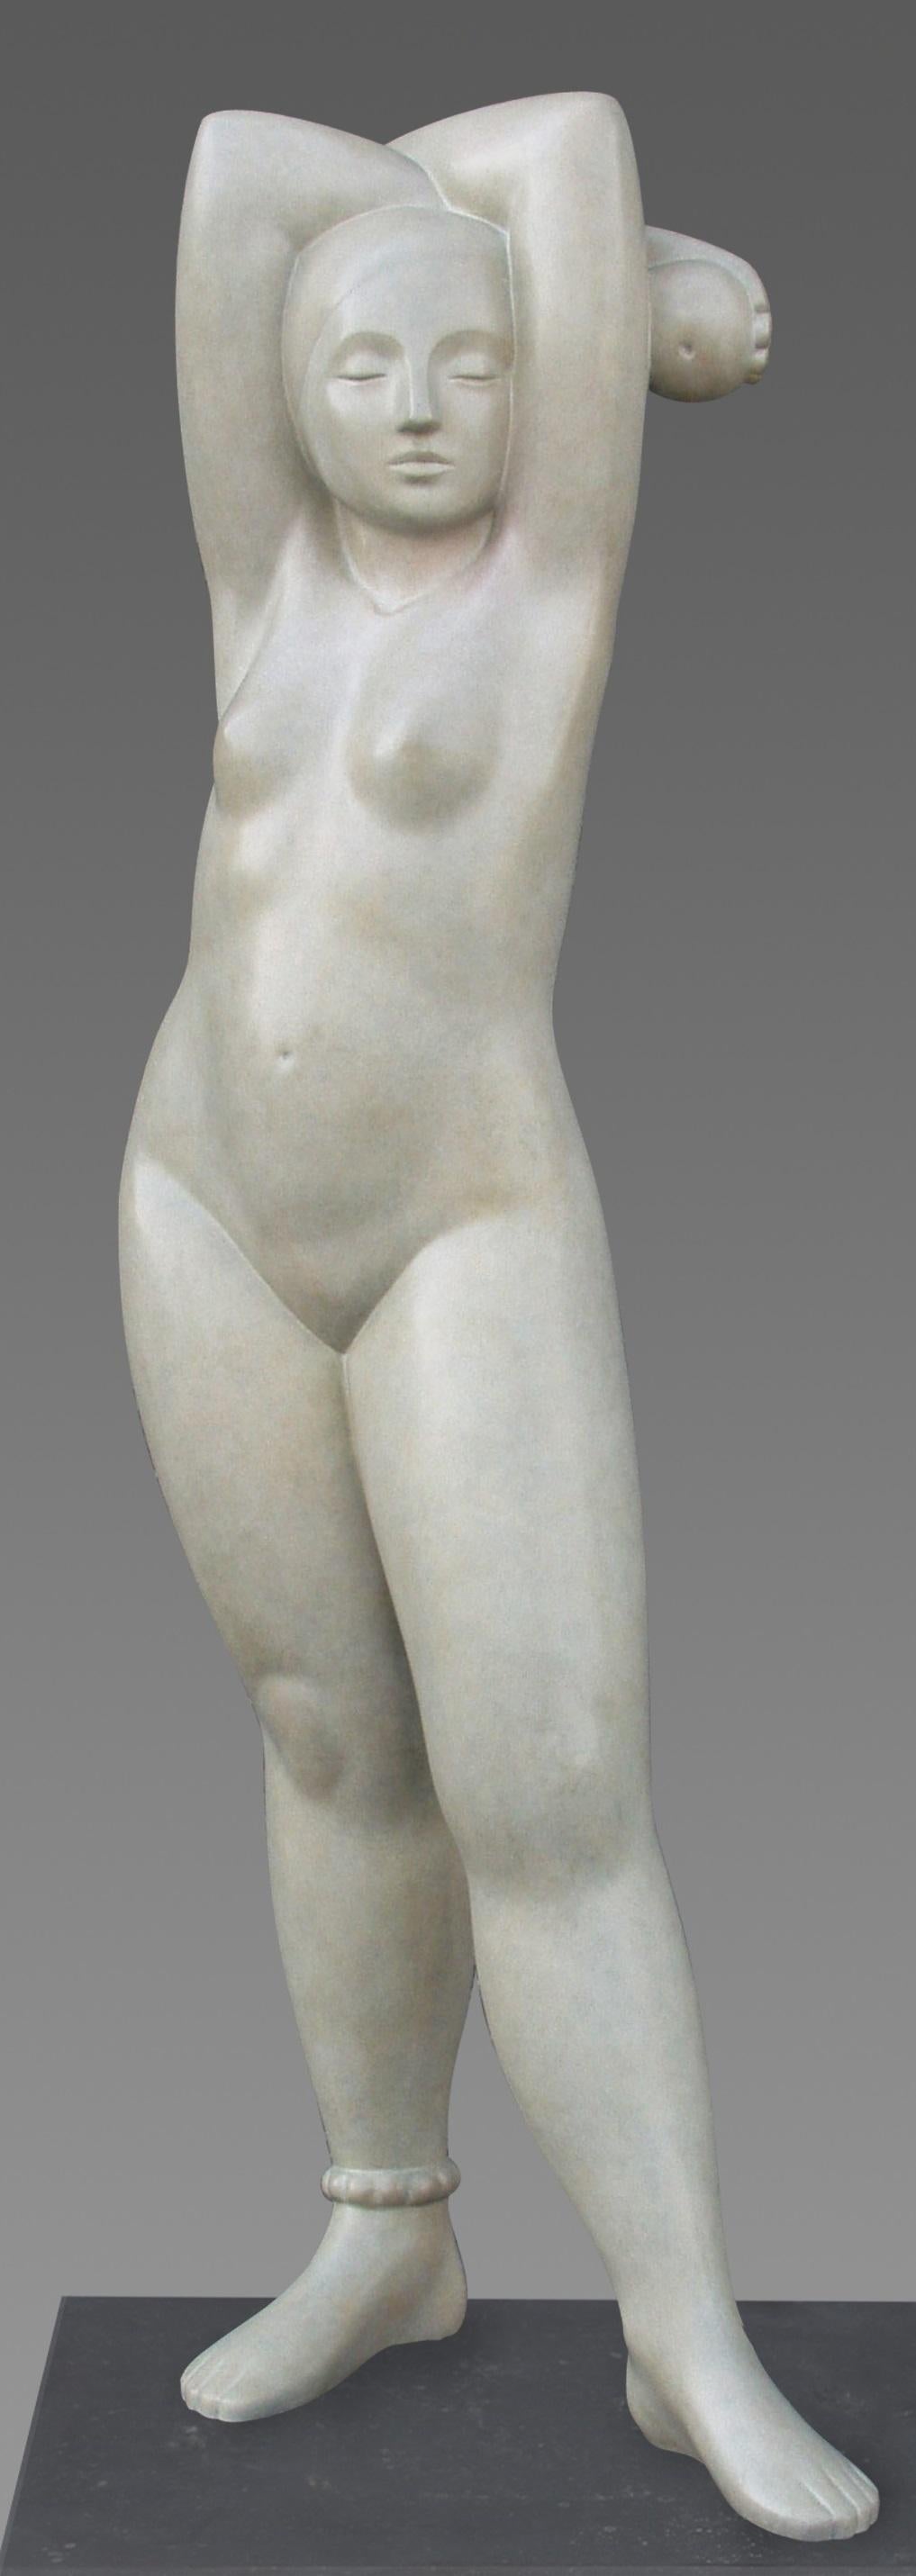 Eva Bronze-Skulptur weibliche Aktfigur, zeitgenössisch  (Gold), Figurative Sculpture, von Erwin Meijer